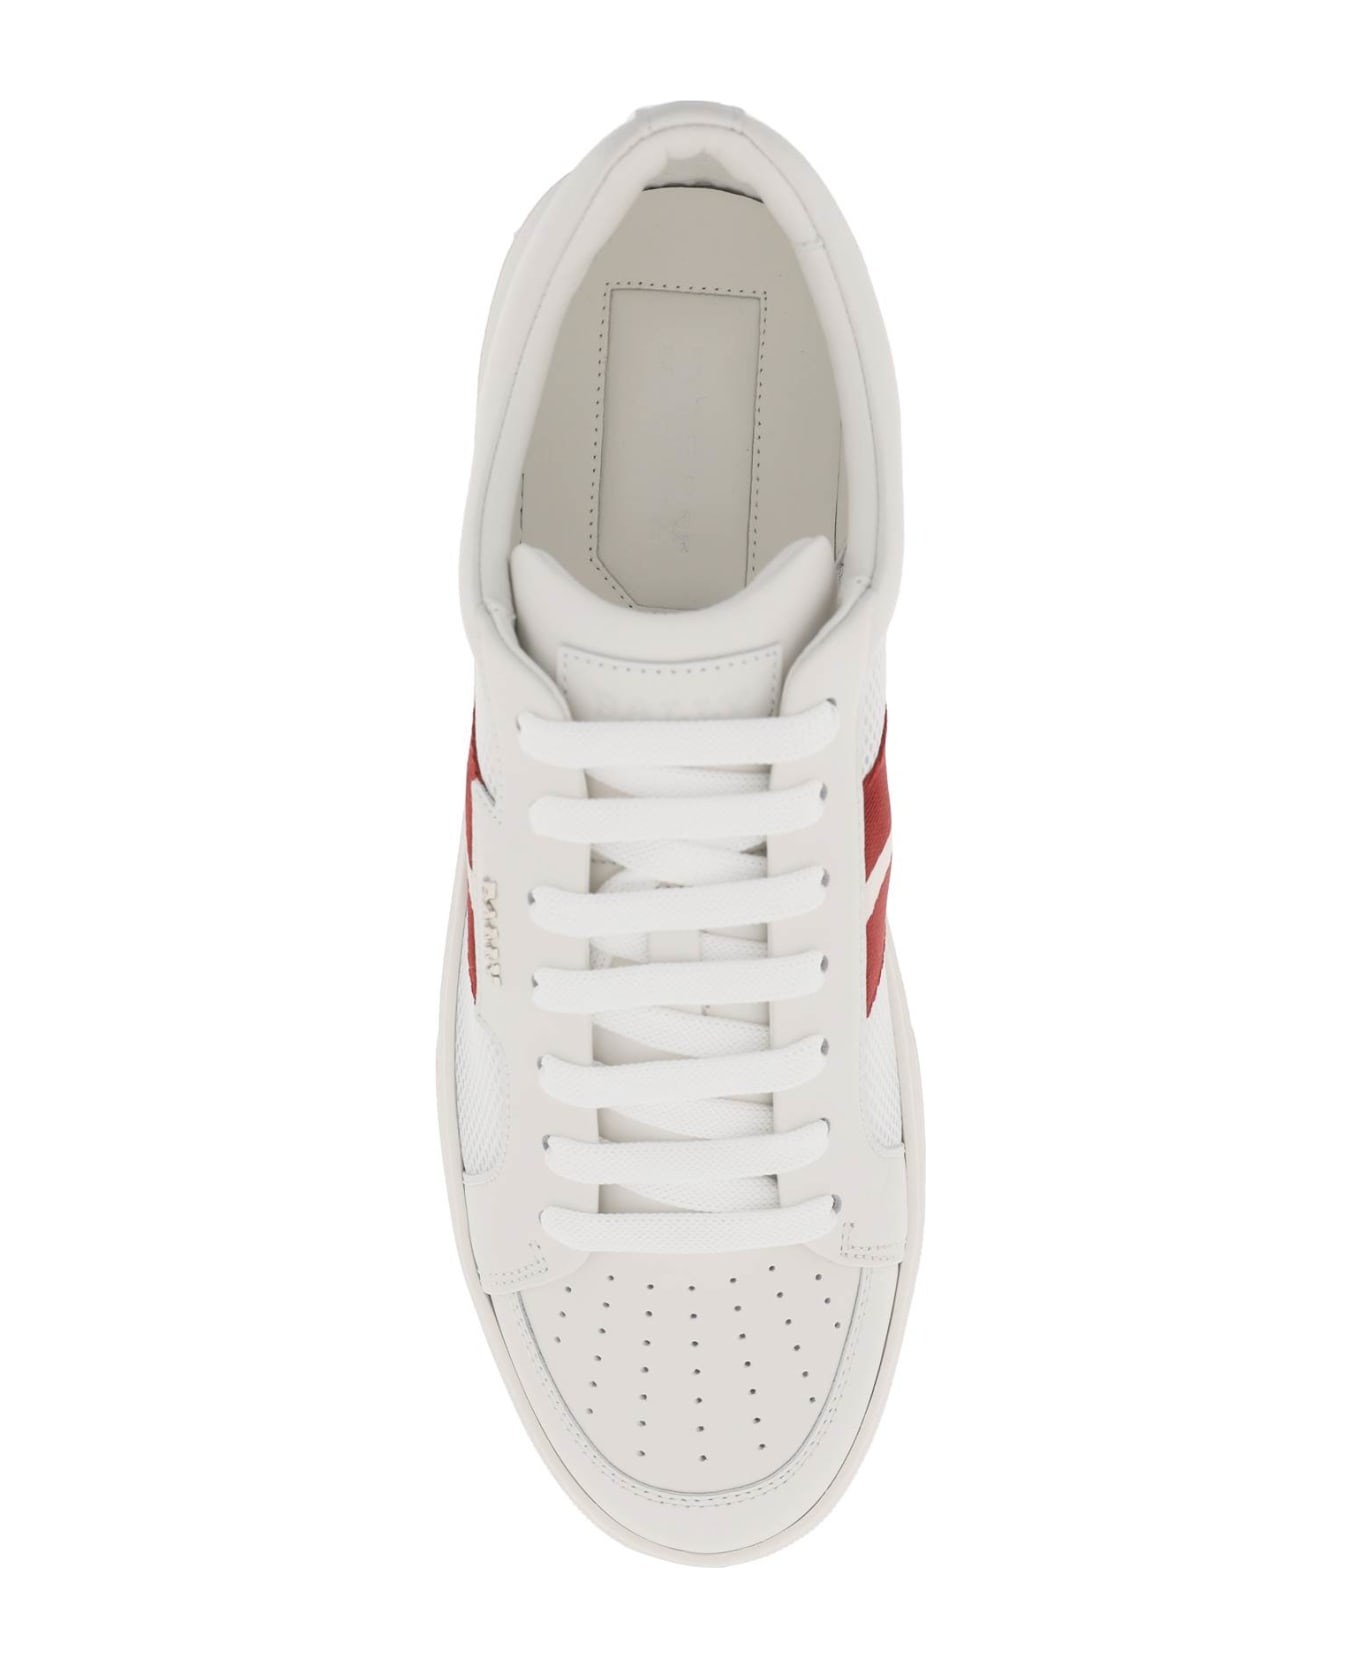 Bally Melys Sneakers - 0300 WHITE (White)